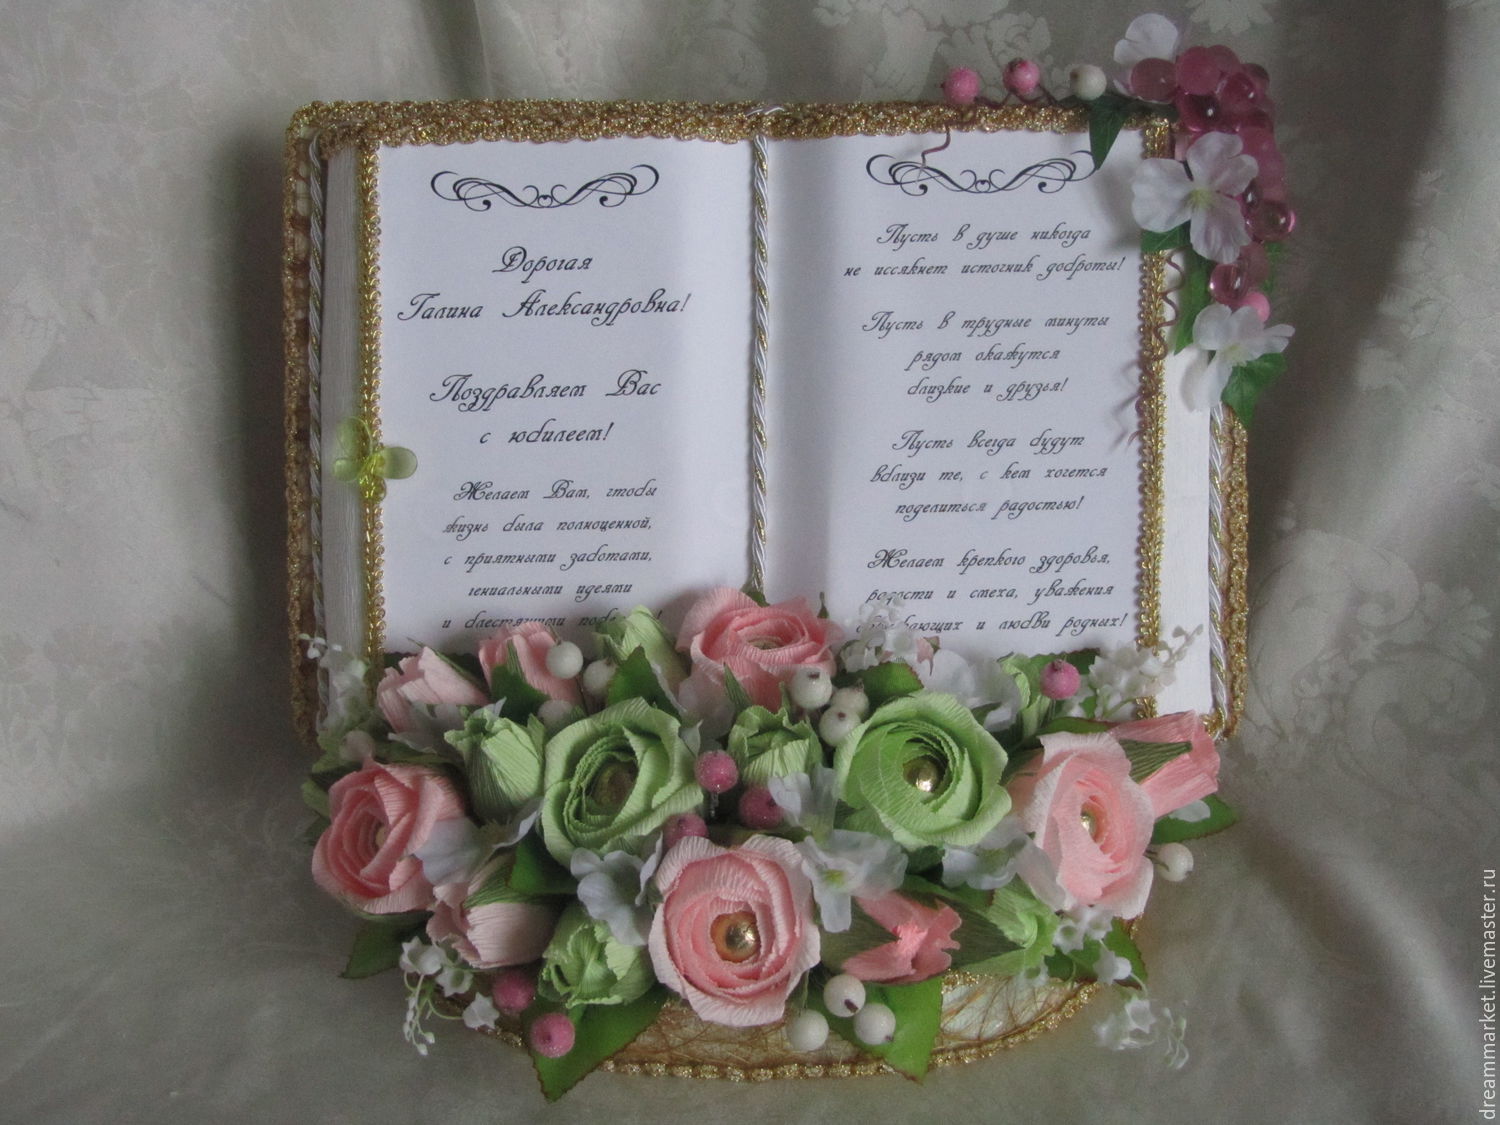 Съедобные букеты на свадьбу - шоколадные свадебные цветы